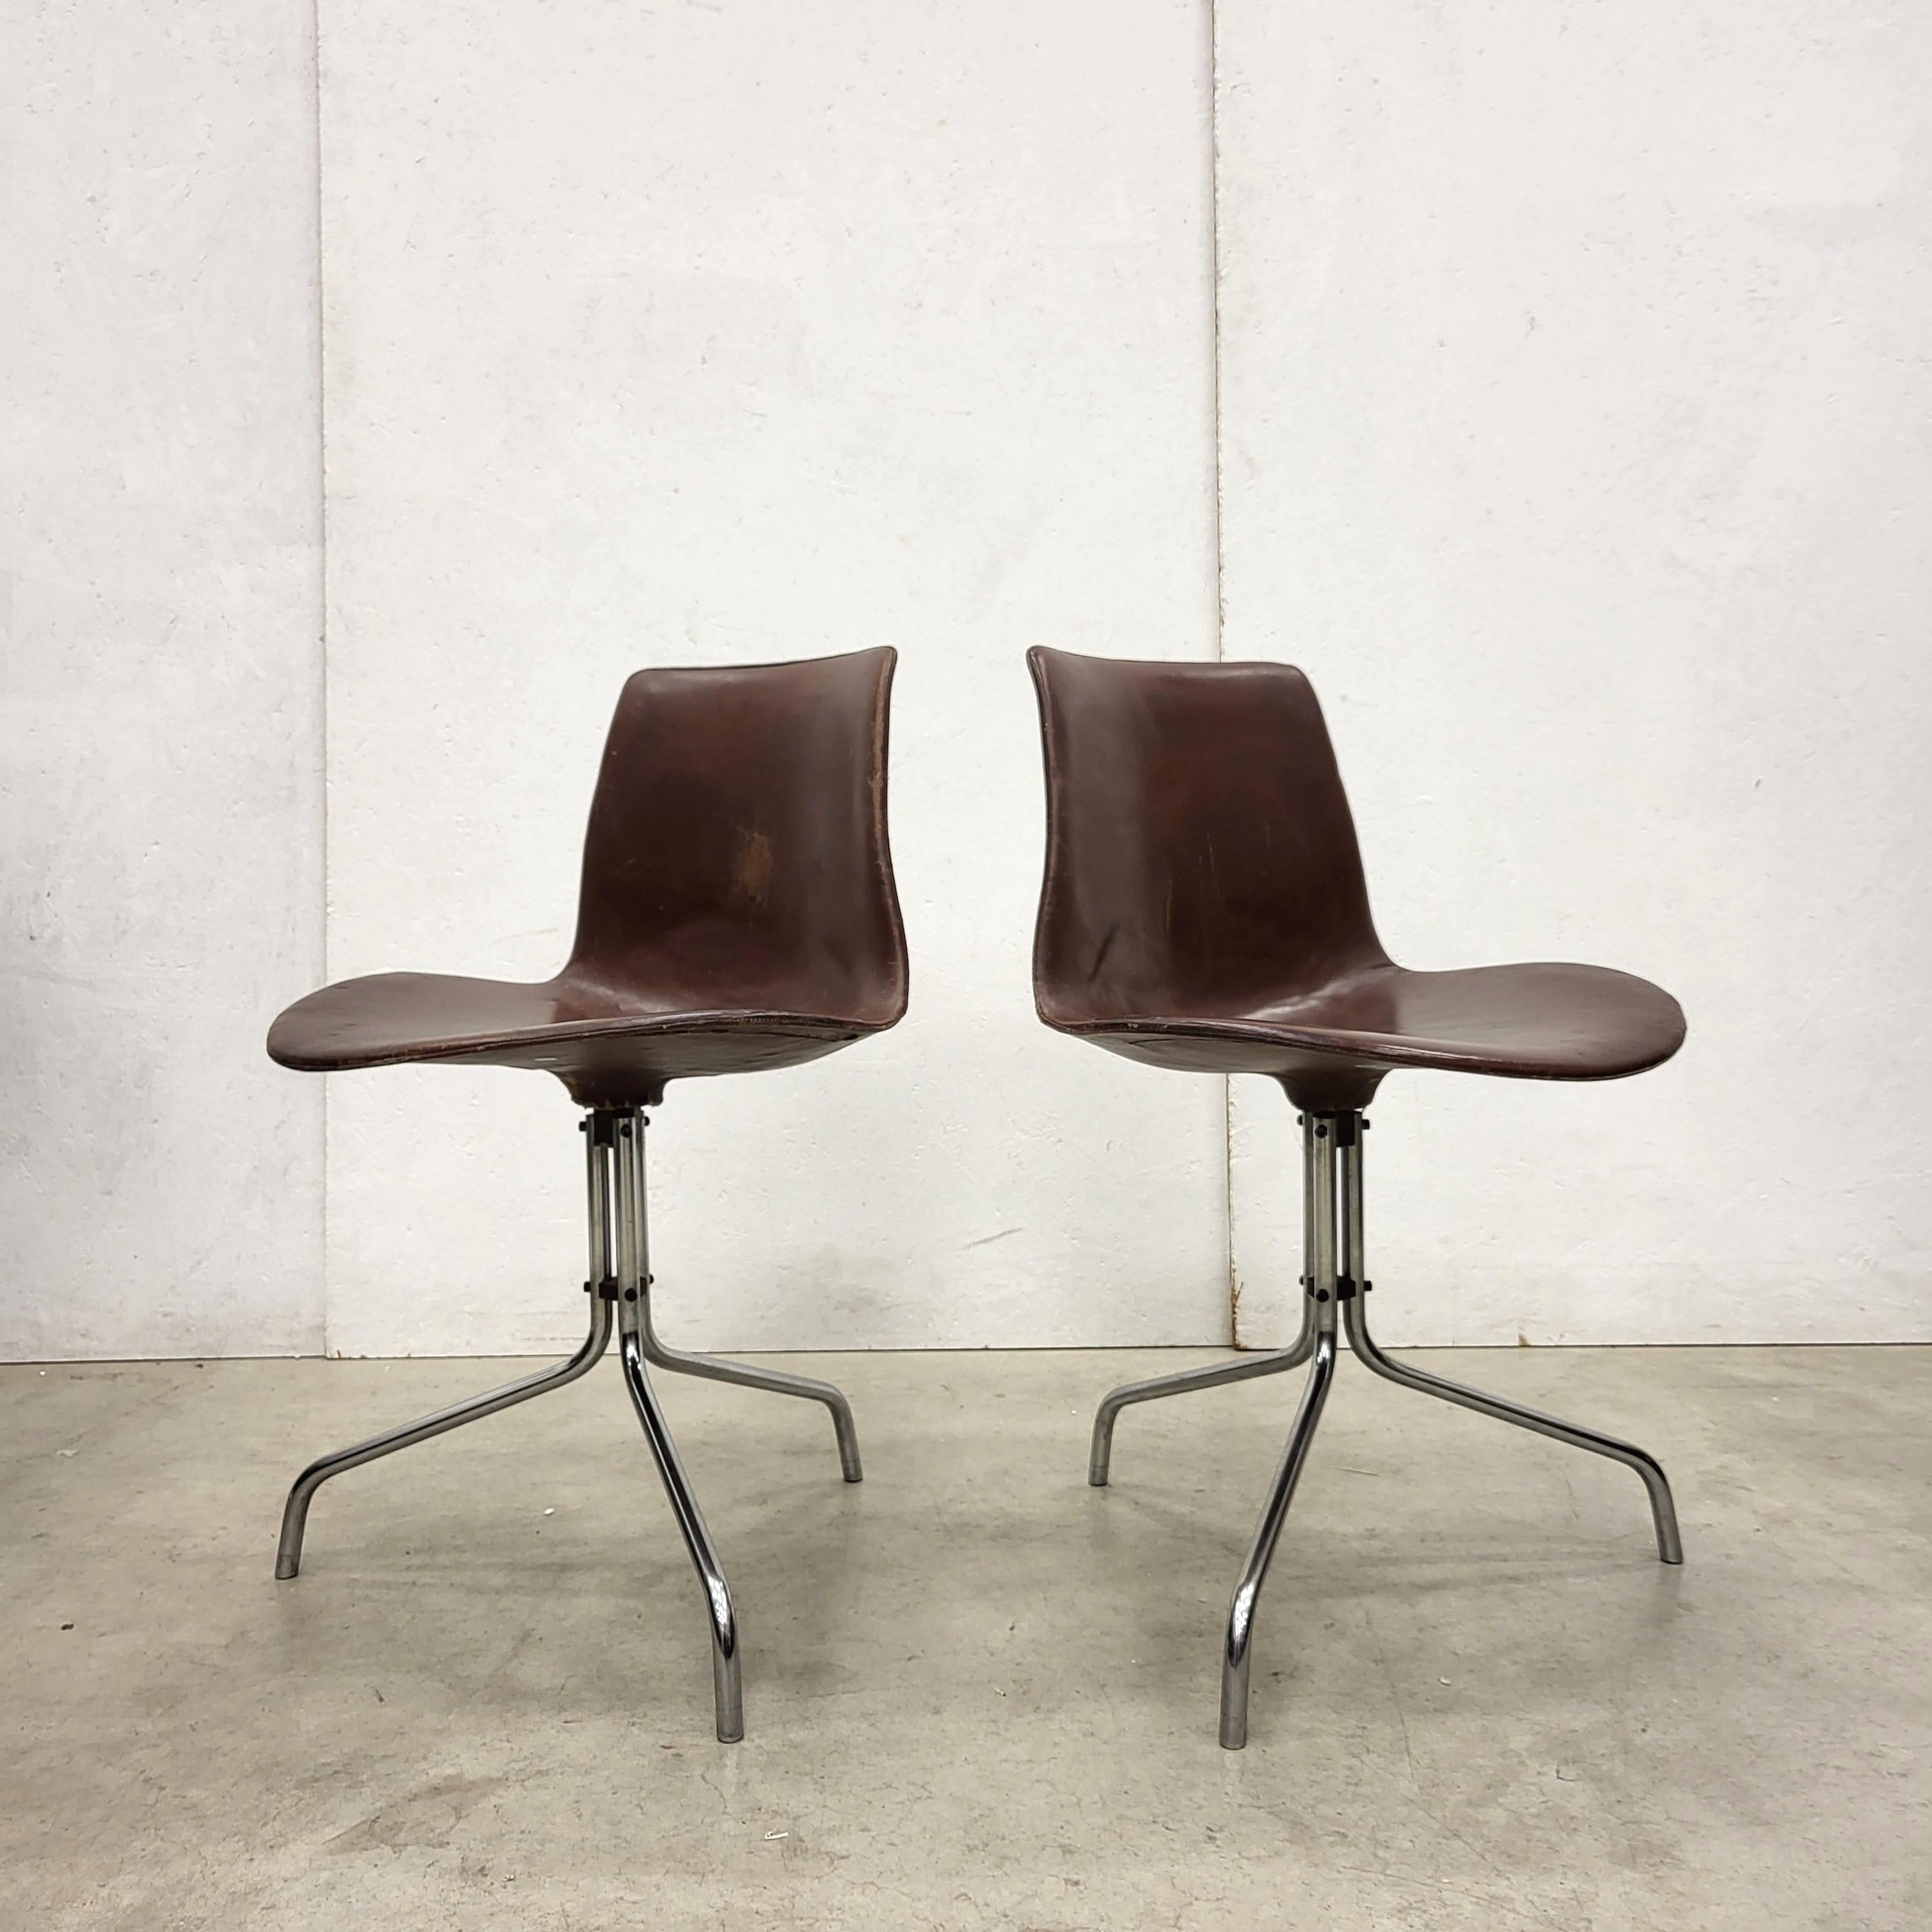 Rare paire de chaises de bureau modèle BO611 par Jorgen Kastholm & Preben Fabricius.
Les chaises ont été fabriquées par Bo-Ex au Danemark au milieu des années 1960.

Les chaises sont constituées d'une coque en fibre de verre avec un revêtement en